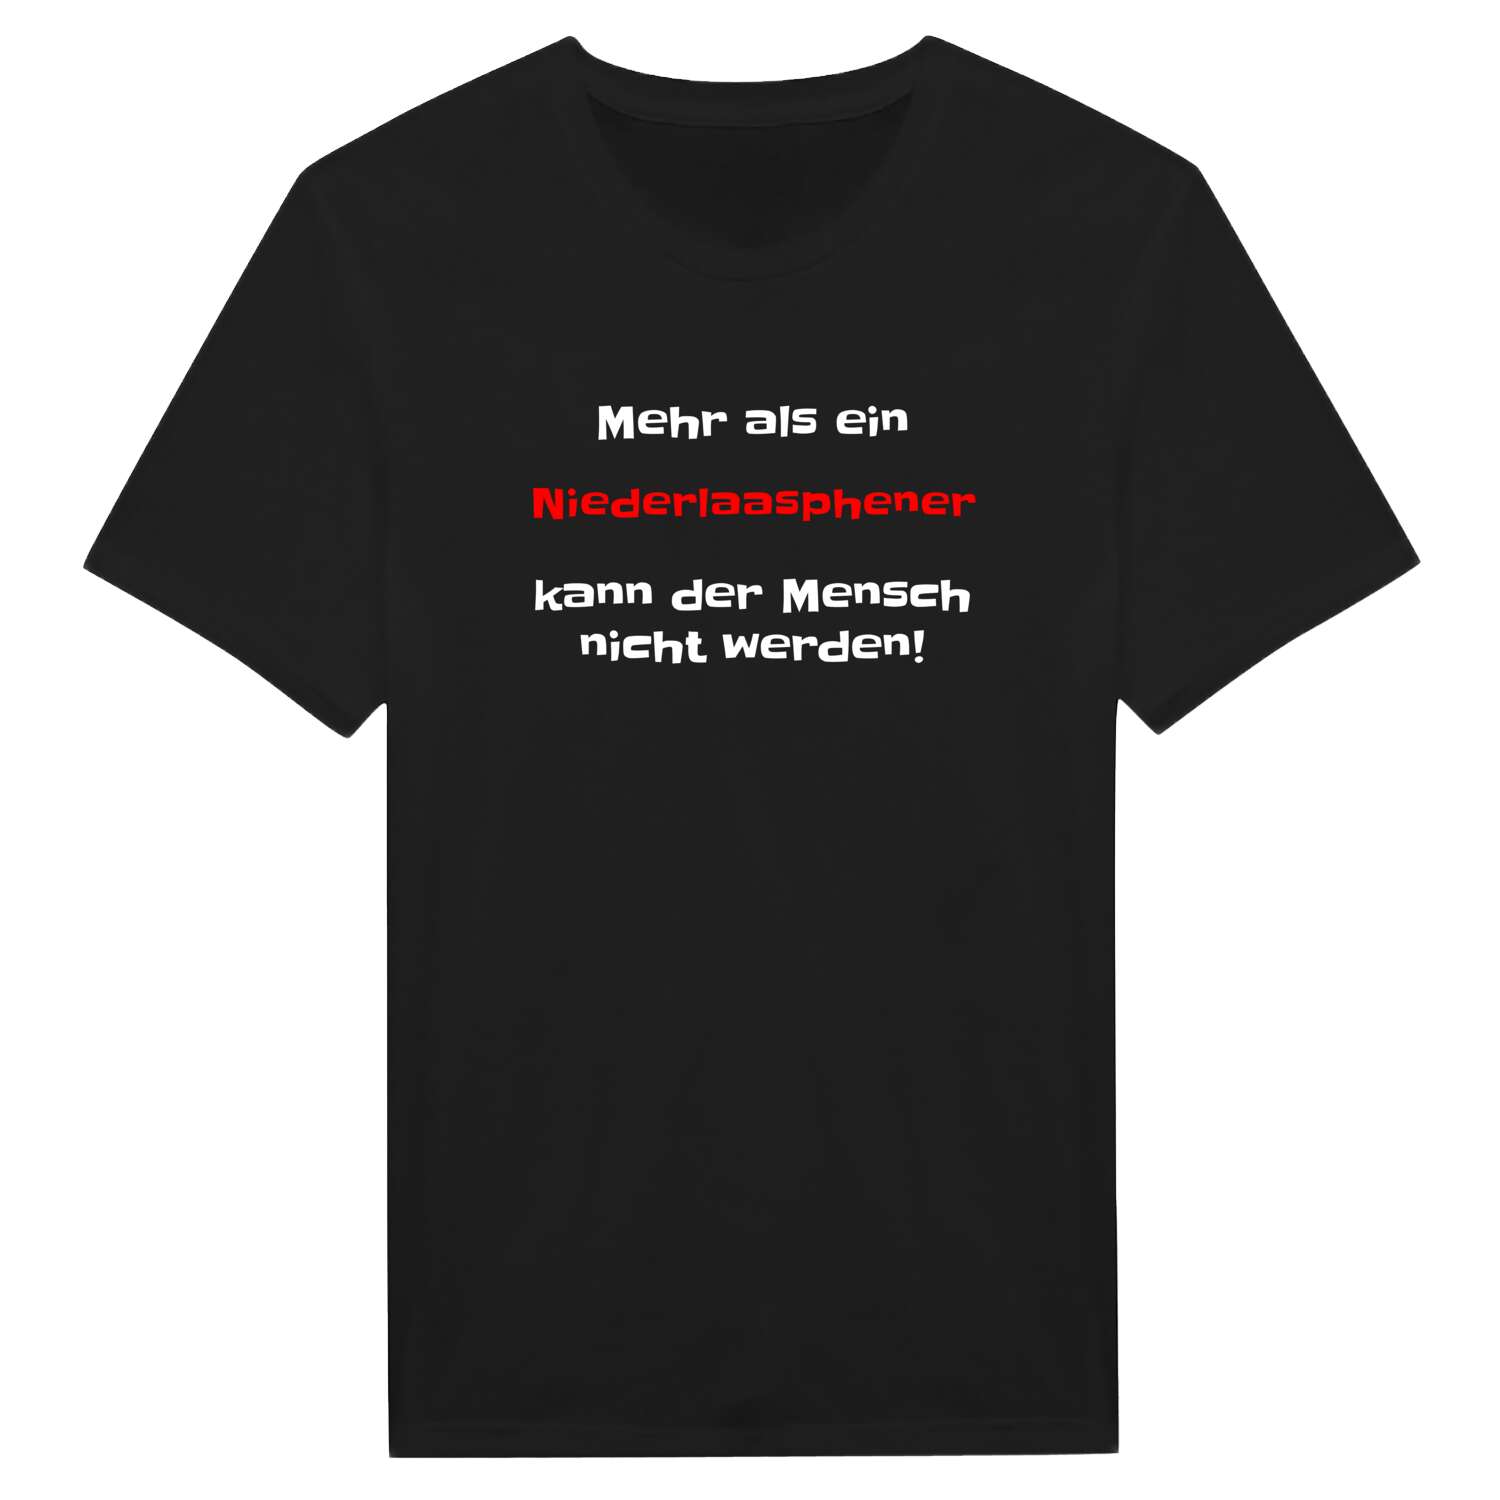 Niederlaasphe T-Shirt »Mehr als ein«